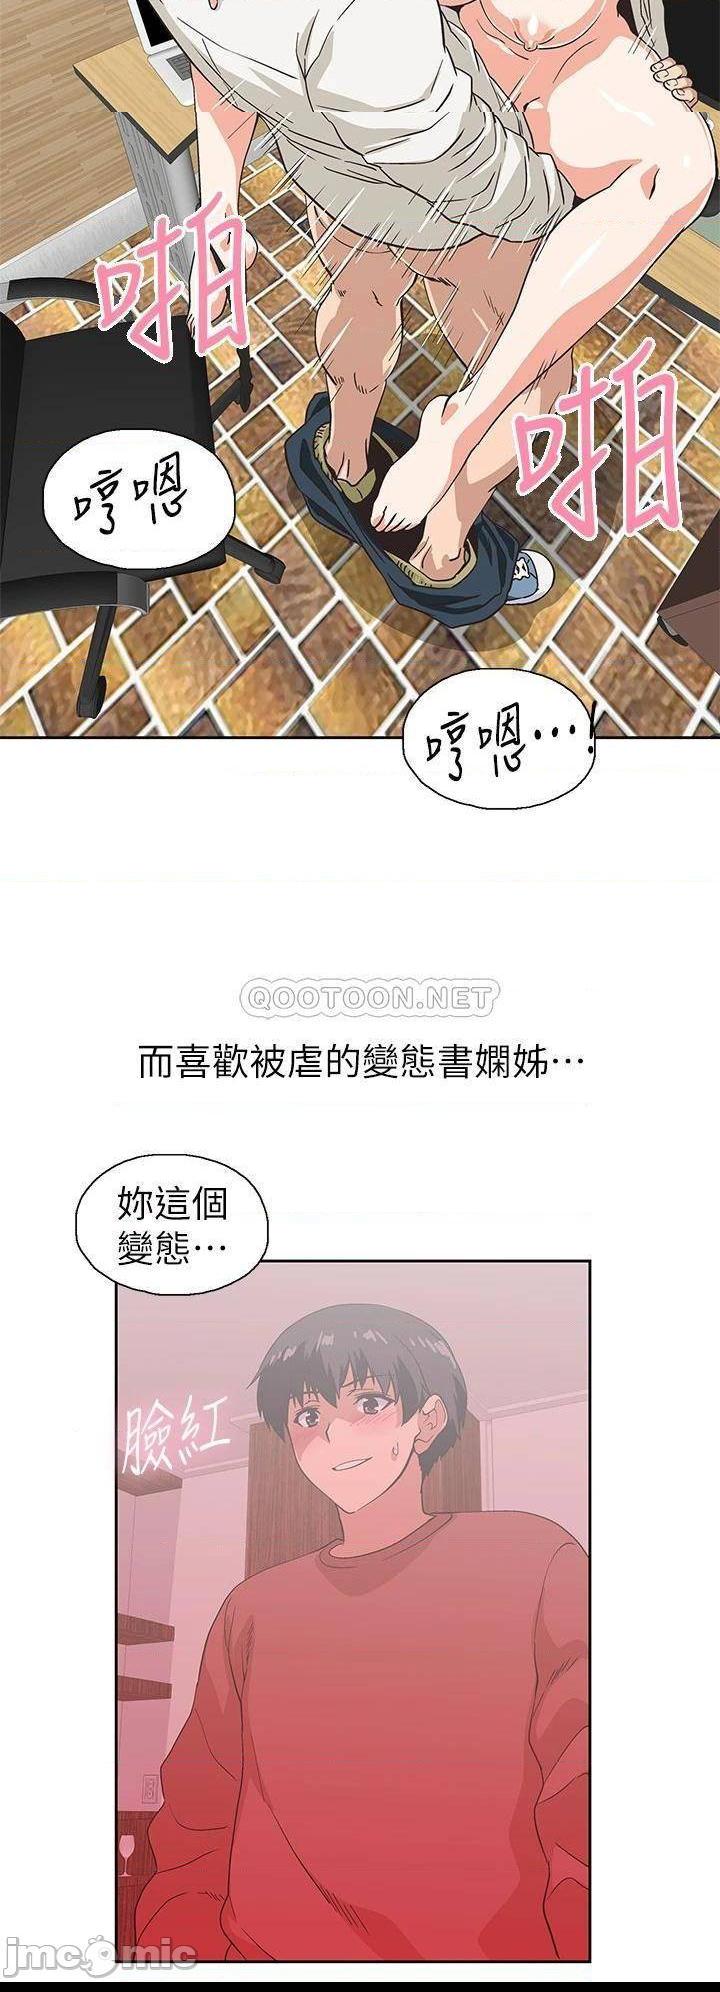 《梦幻速食店》漫画 第35话 填补汉娜空缺的糜烂日常